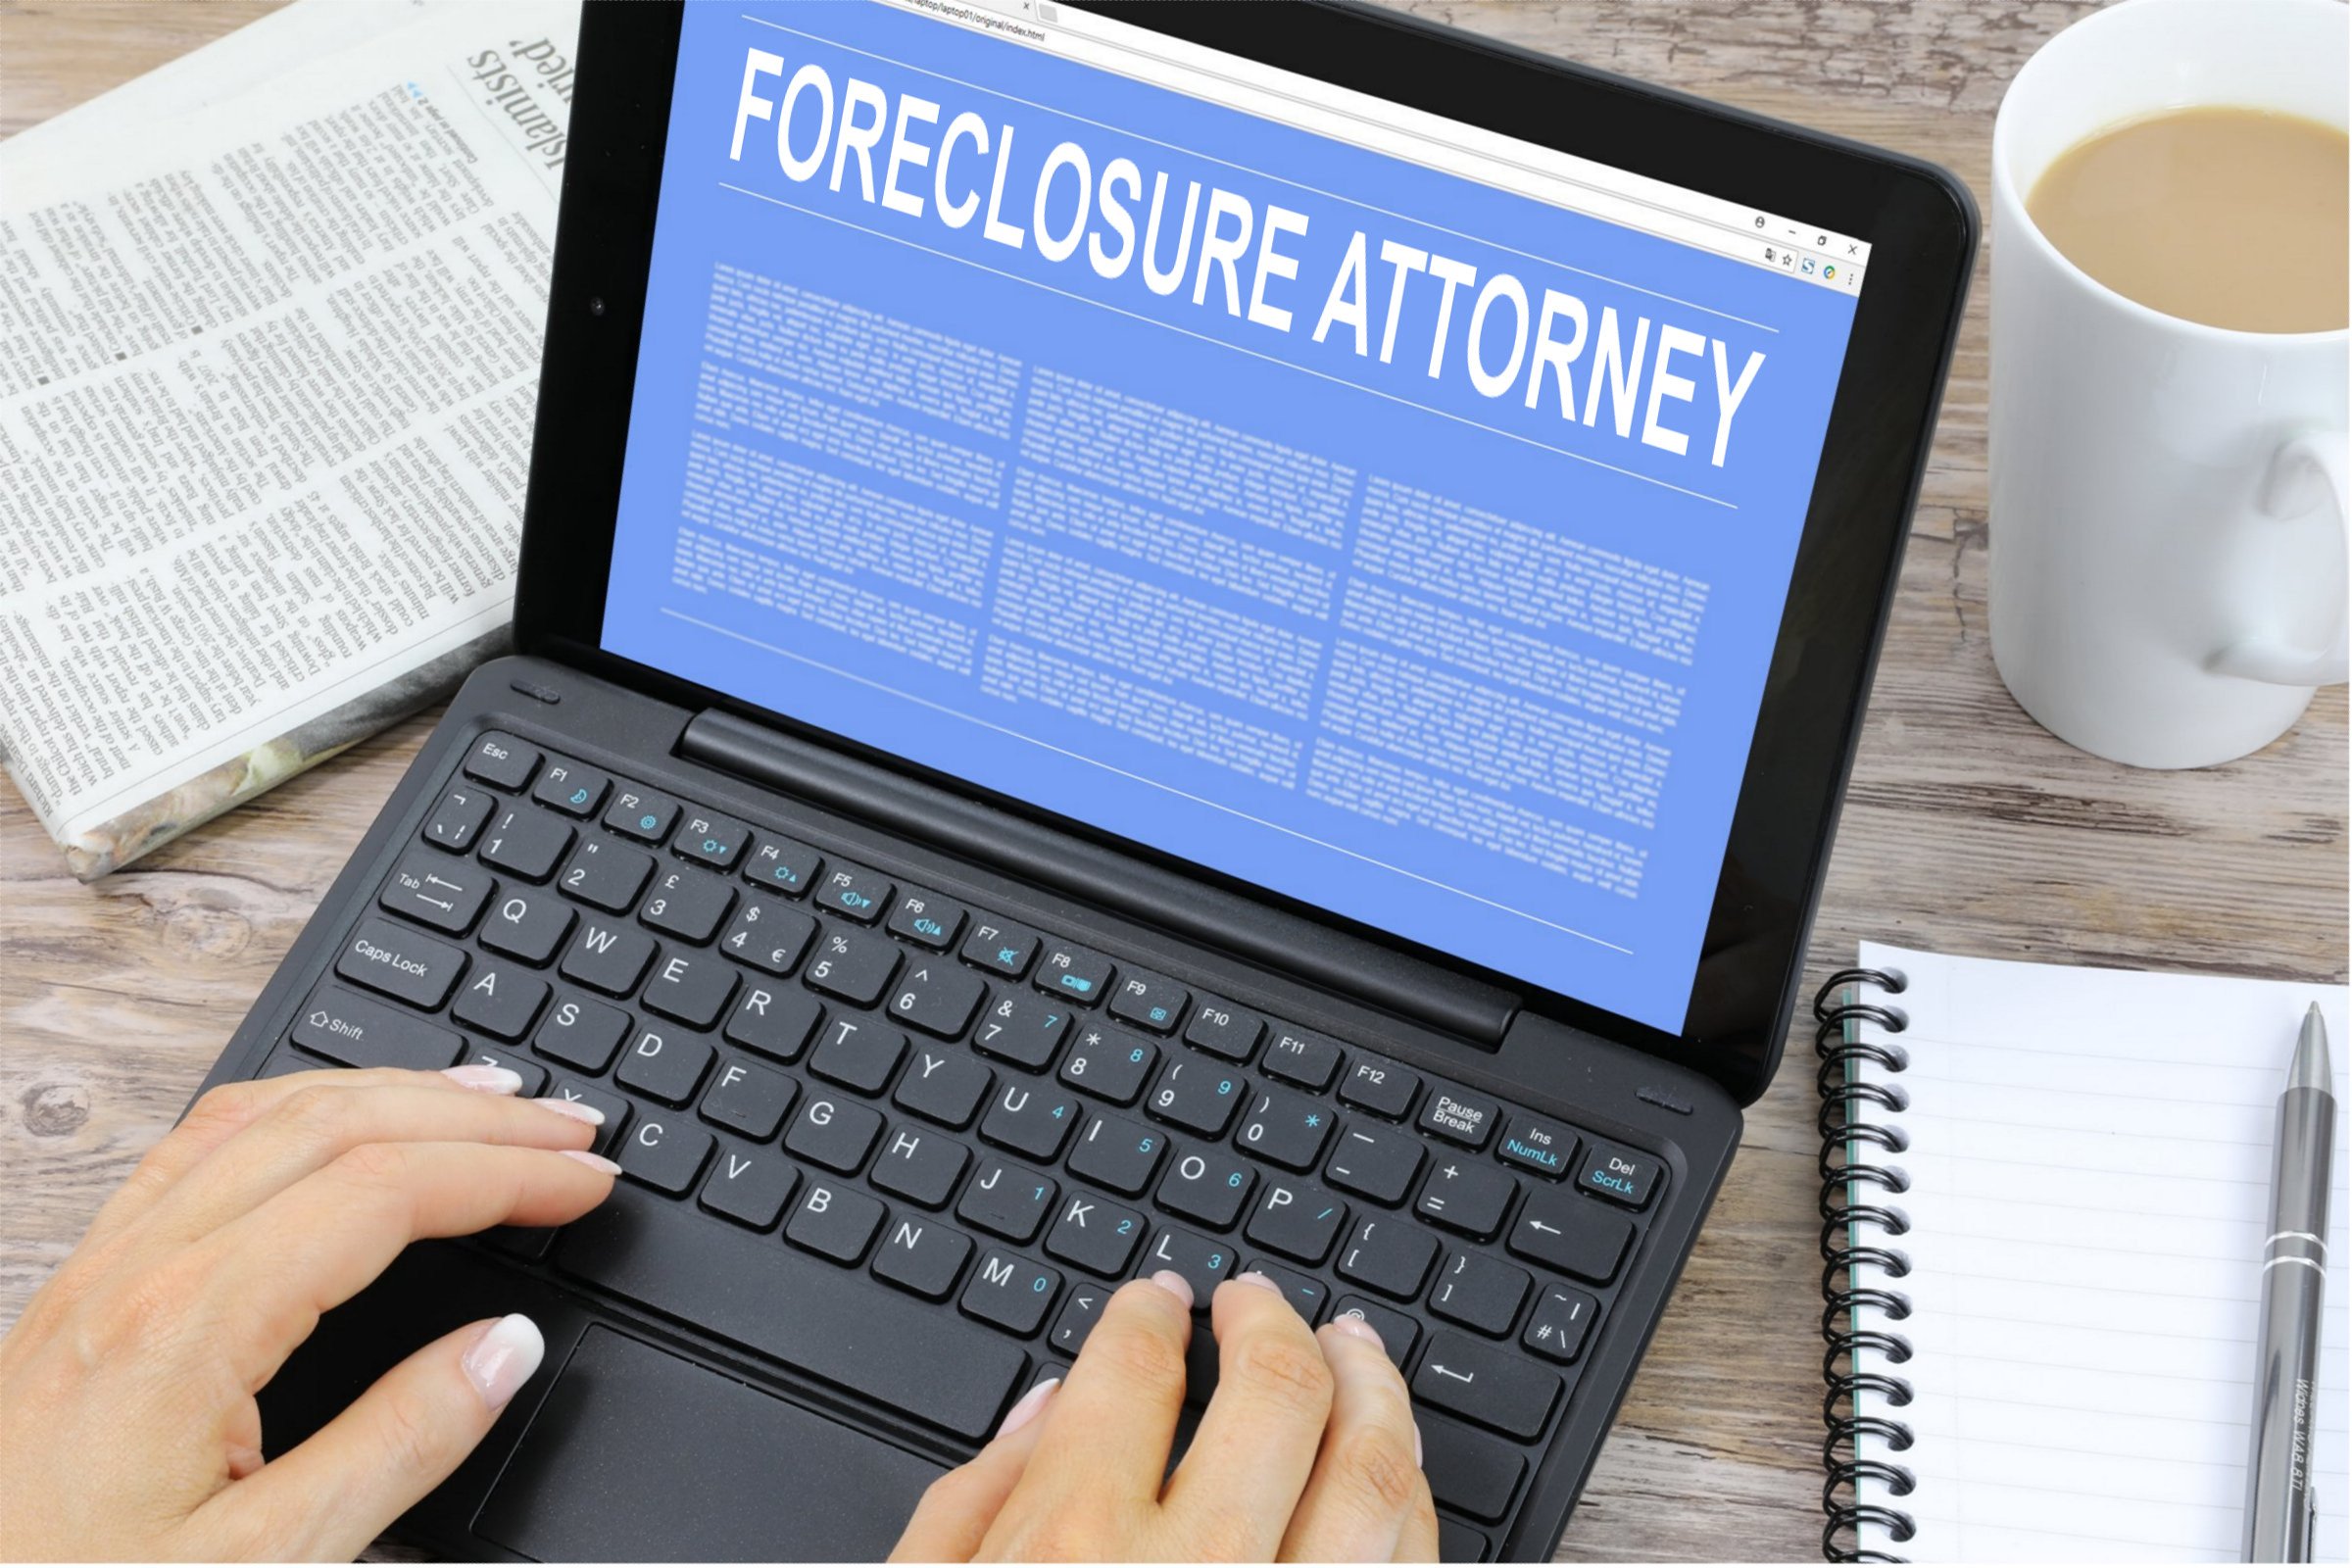 Foreclosure Attorney